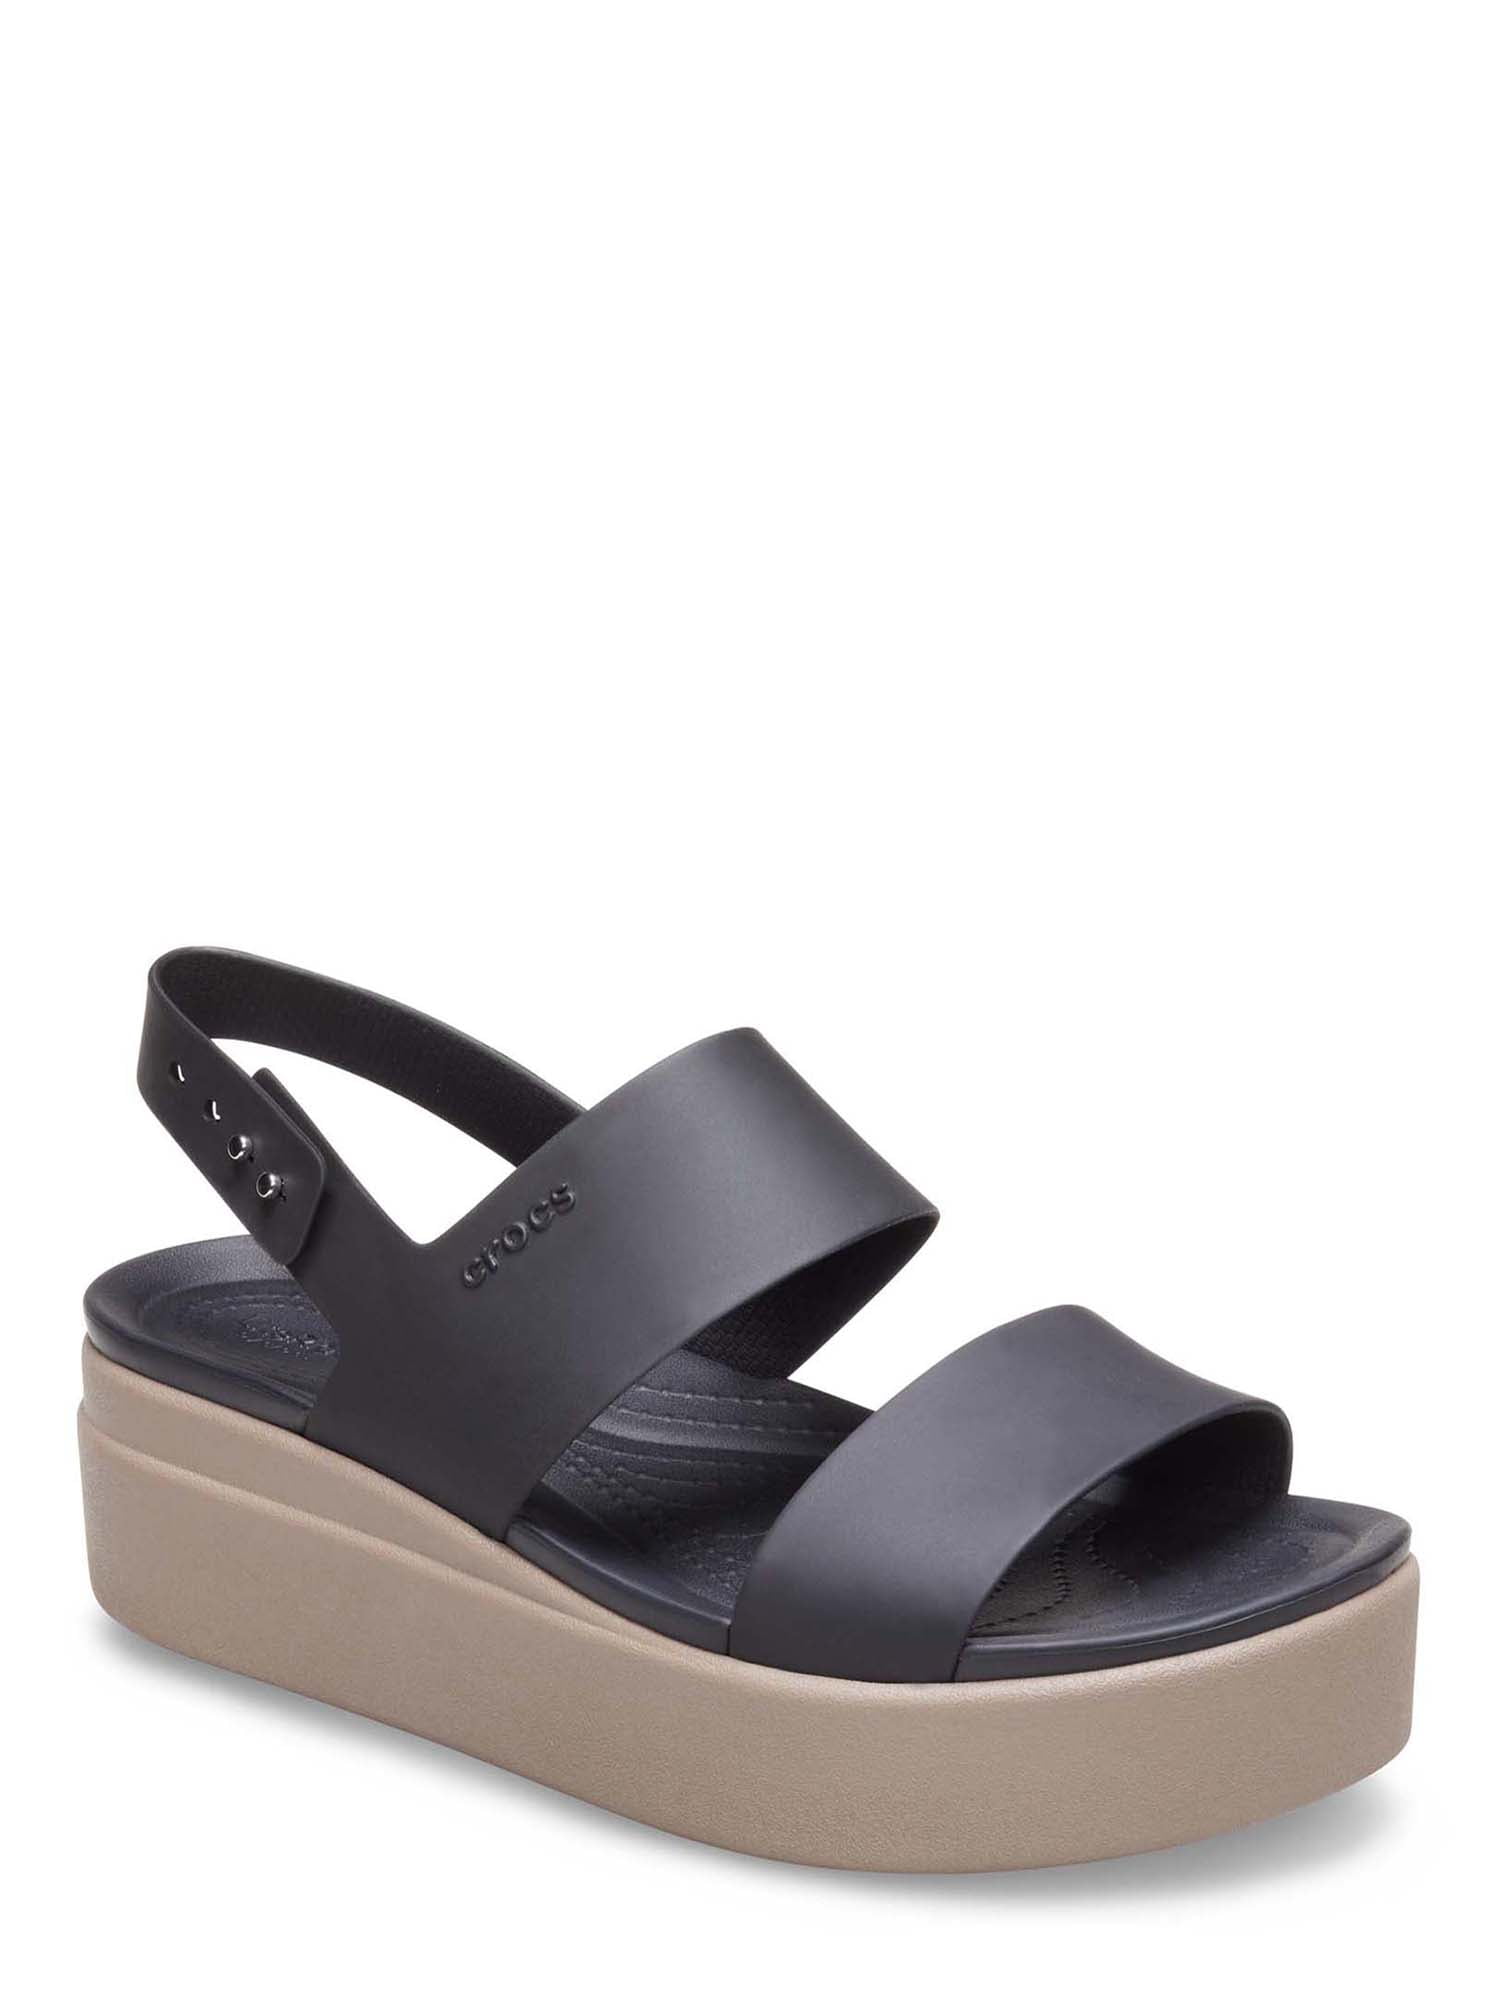 Crocs Women's Brooklyn Low Wedge Platform Sandal (4-11, Black or Black/Mushroom) $14.88 + Free S&H w/ Walmart+ or $35+